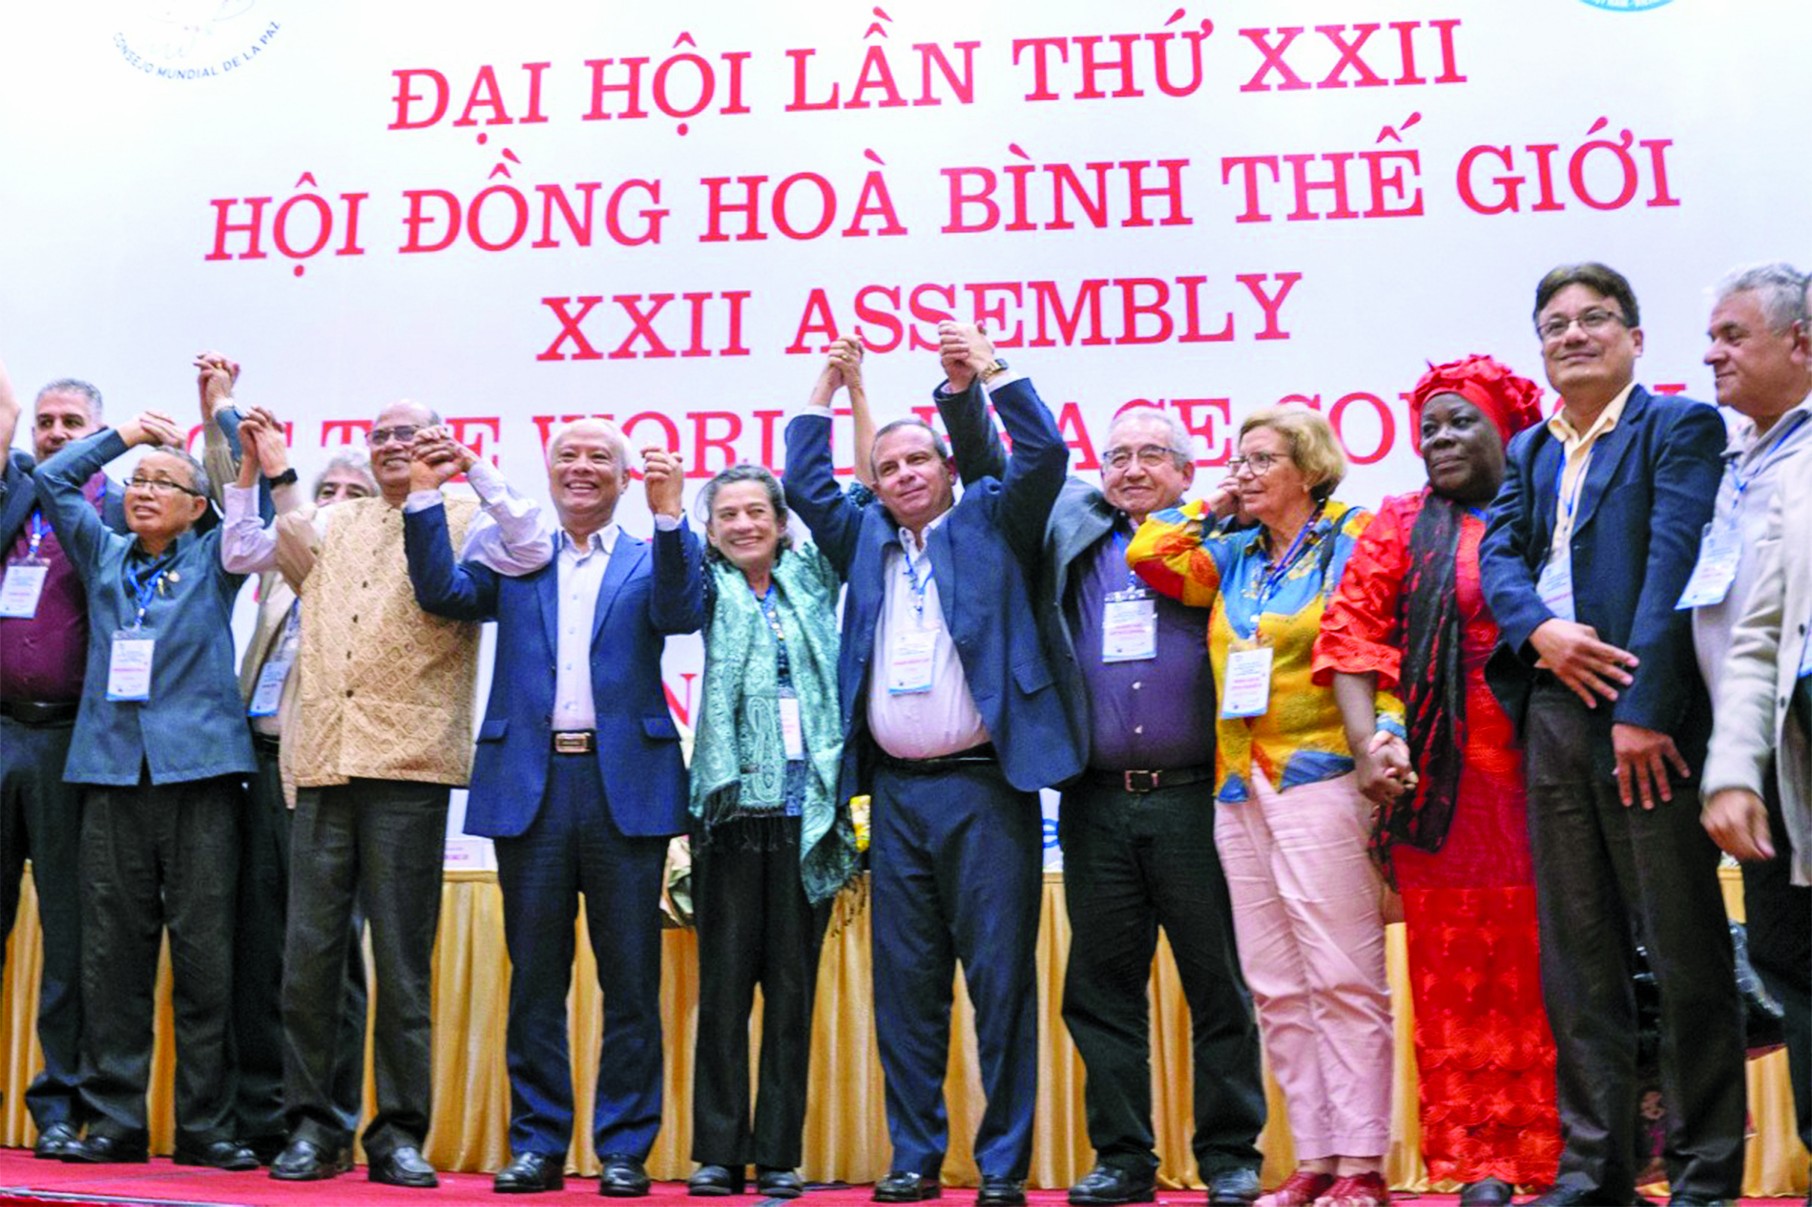 Các đại biểu dự Đại hội lần thứ 22 Hội đồng hoà bình thế giới, tháng 11/2022 tại  Hà Nội (Ảnh: Trường Hùng).